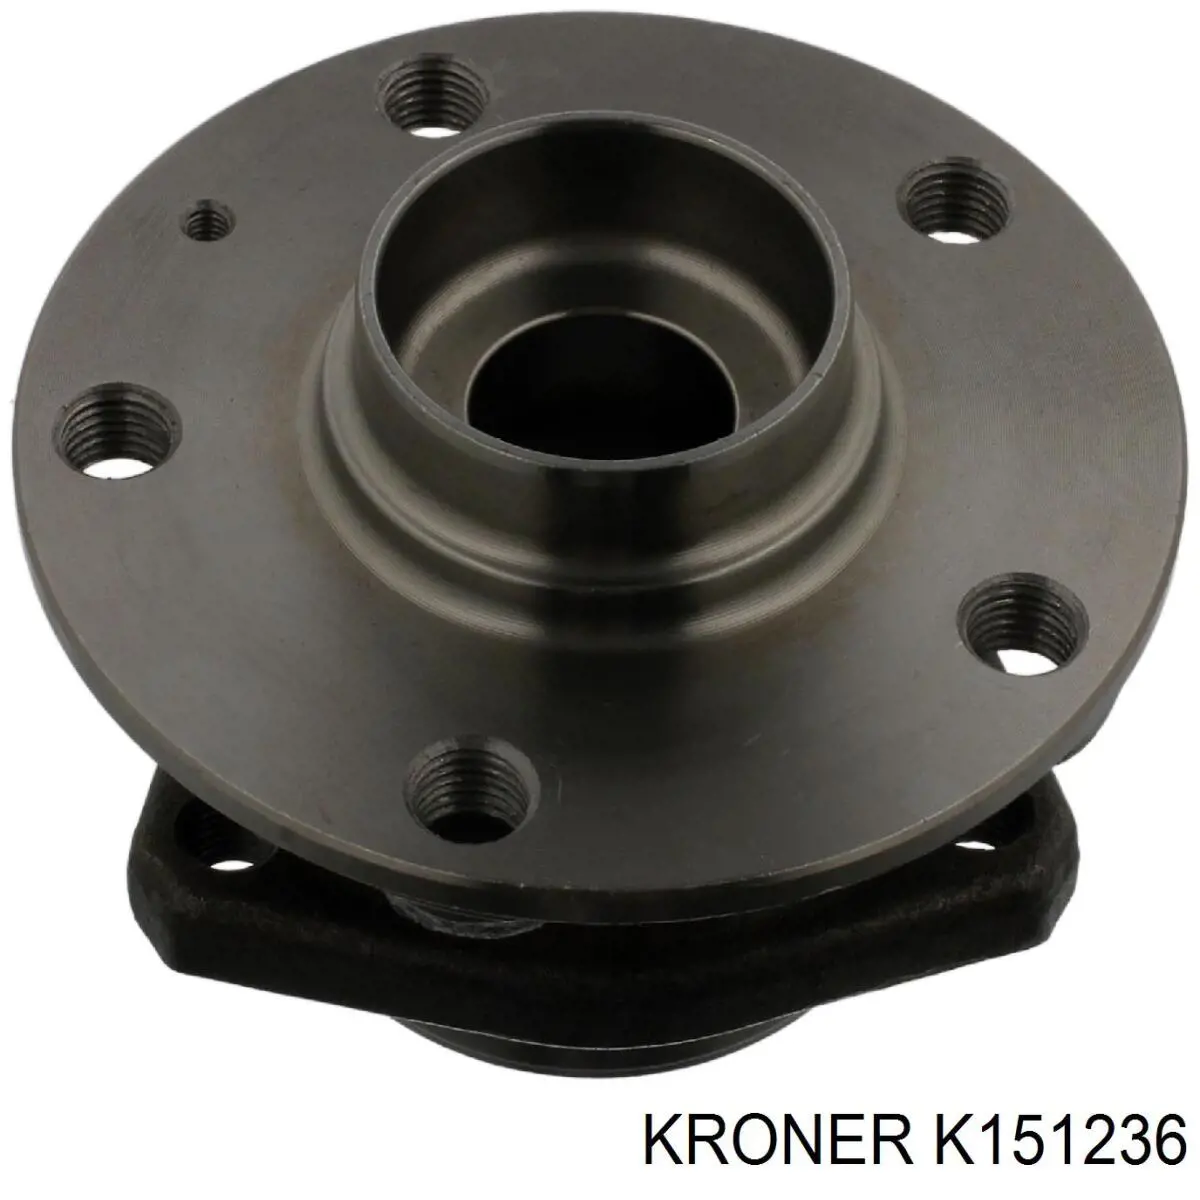 K151236 Kroner ступица передняя